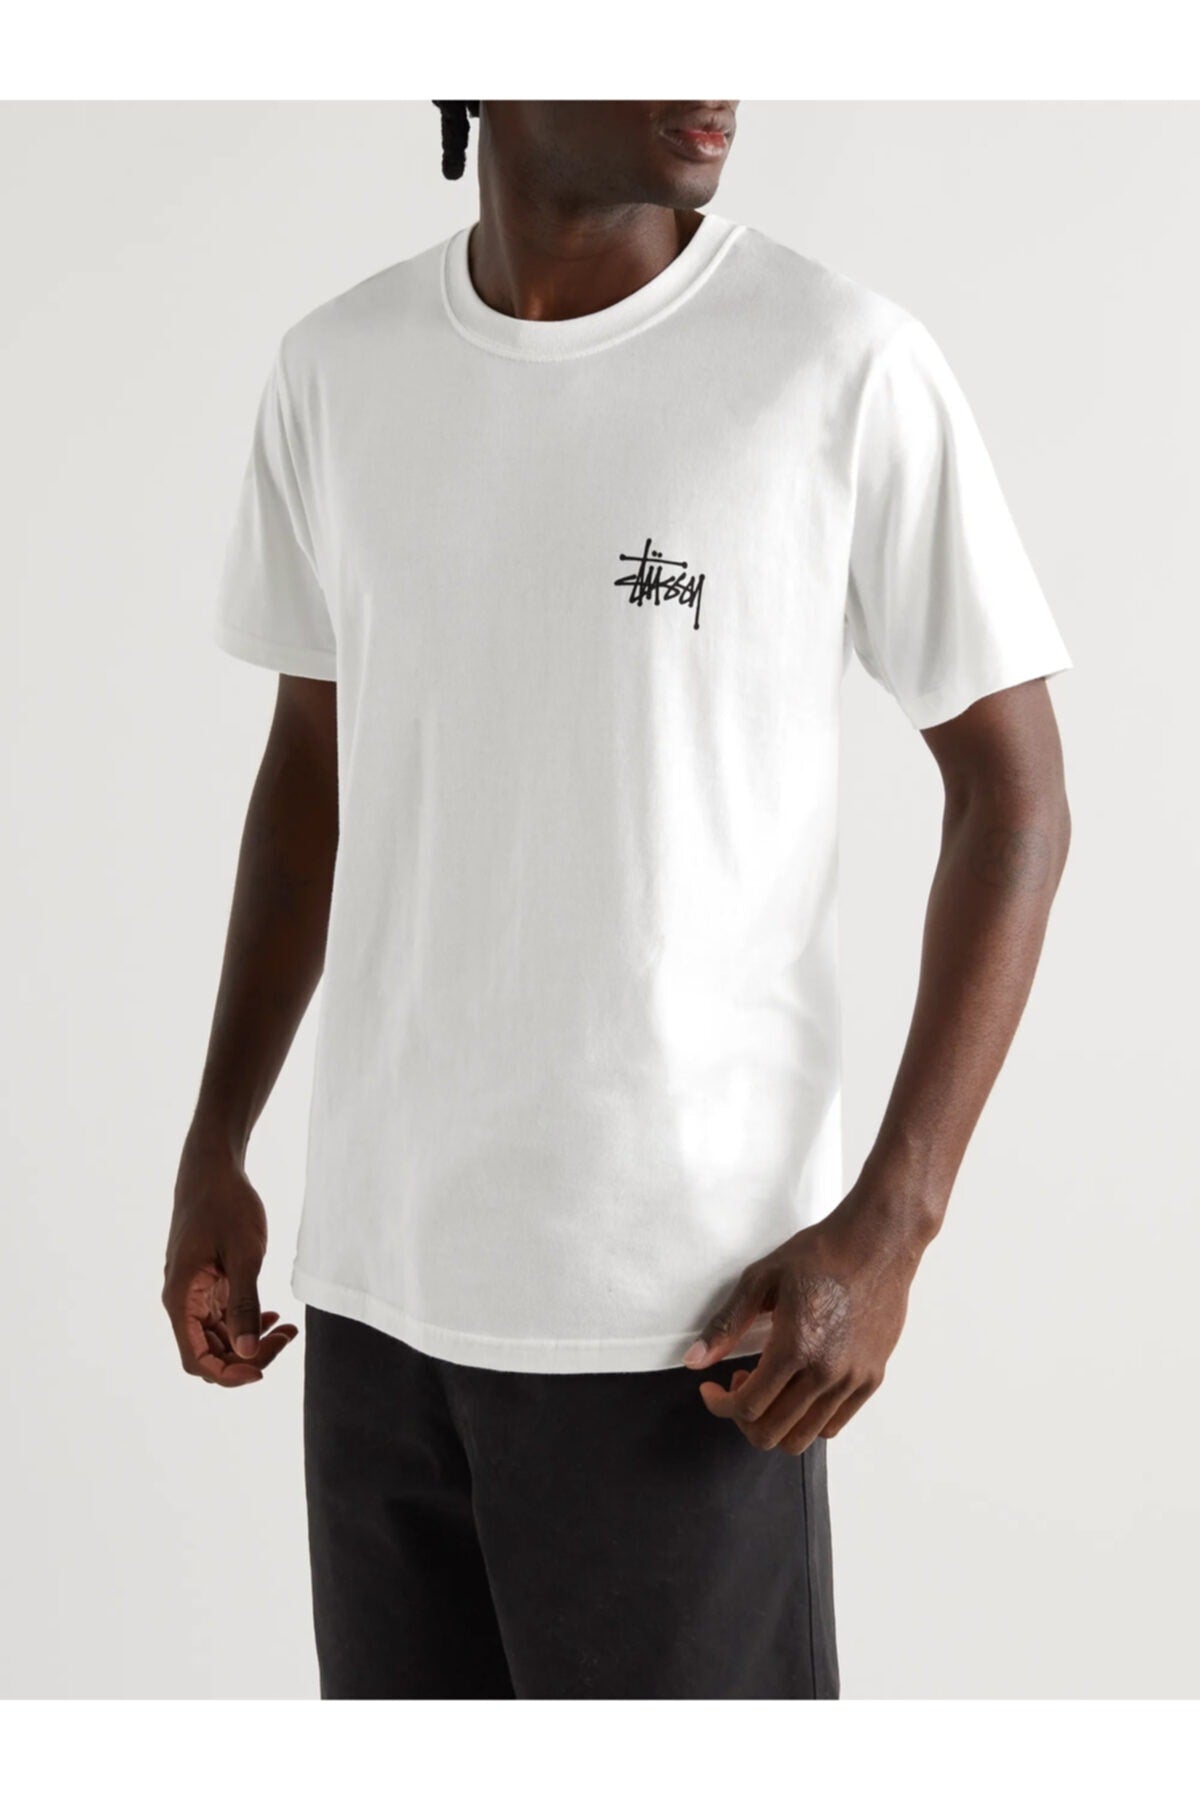 White Back Printed Unisex Short Sleeve T-shirt